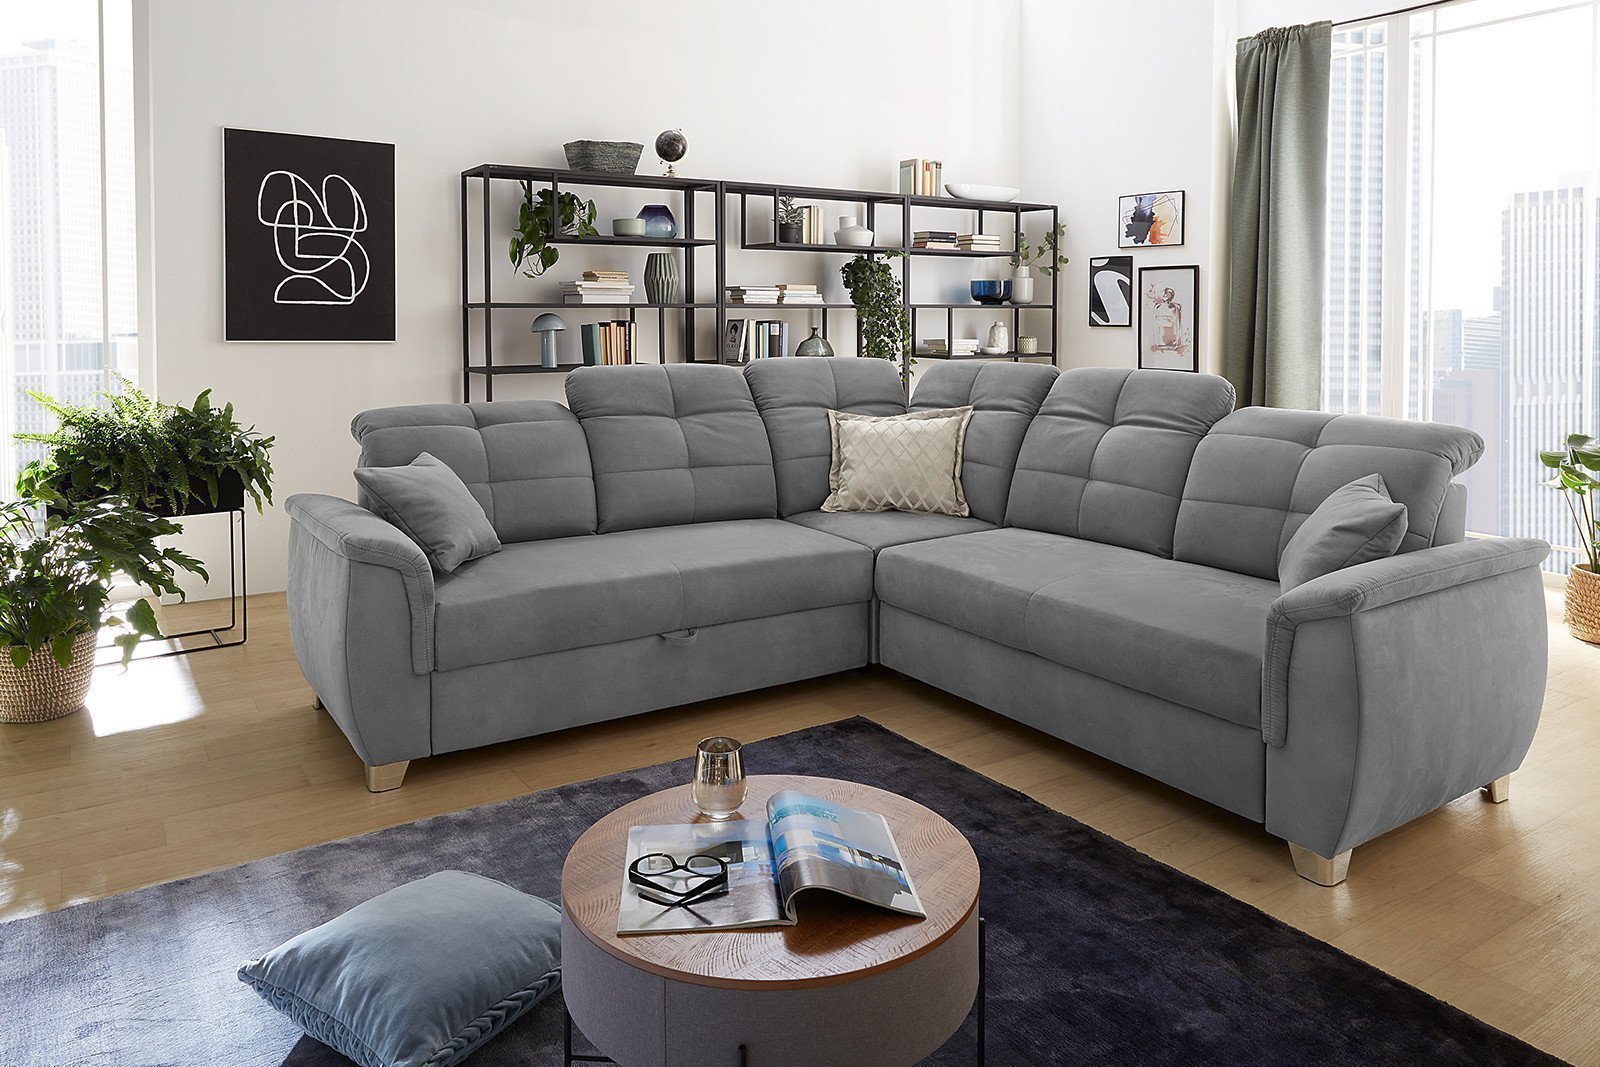 Jockenhöfer Polstermöbel Udine Sofa | Möbel - Ihr Letz in Online-Shop Grau